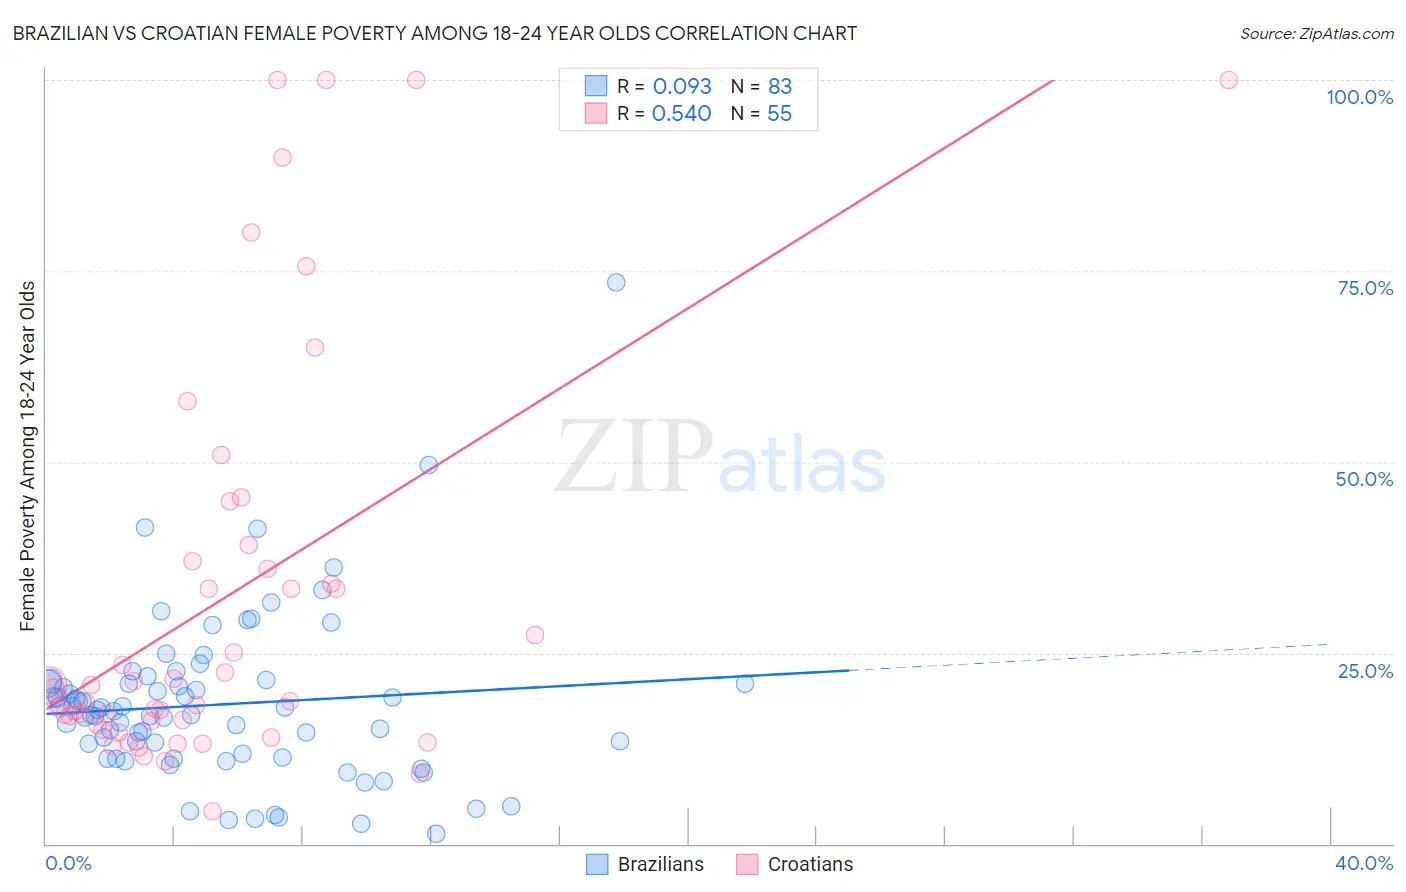 Brazilian vs Croatian Female Poverty Among 18-24 Year Olds